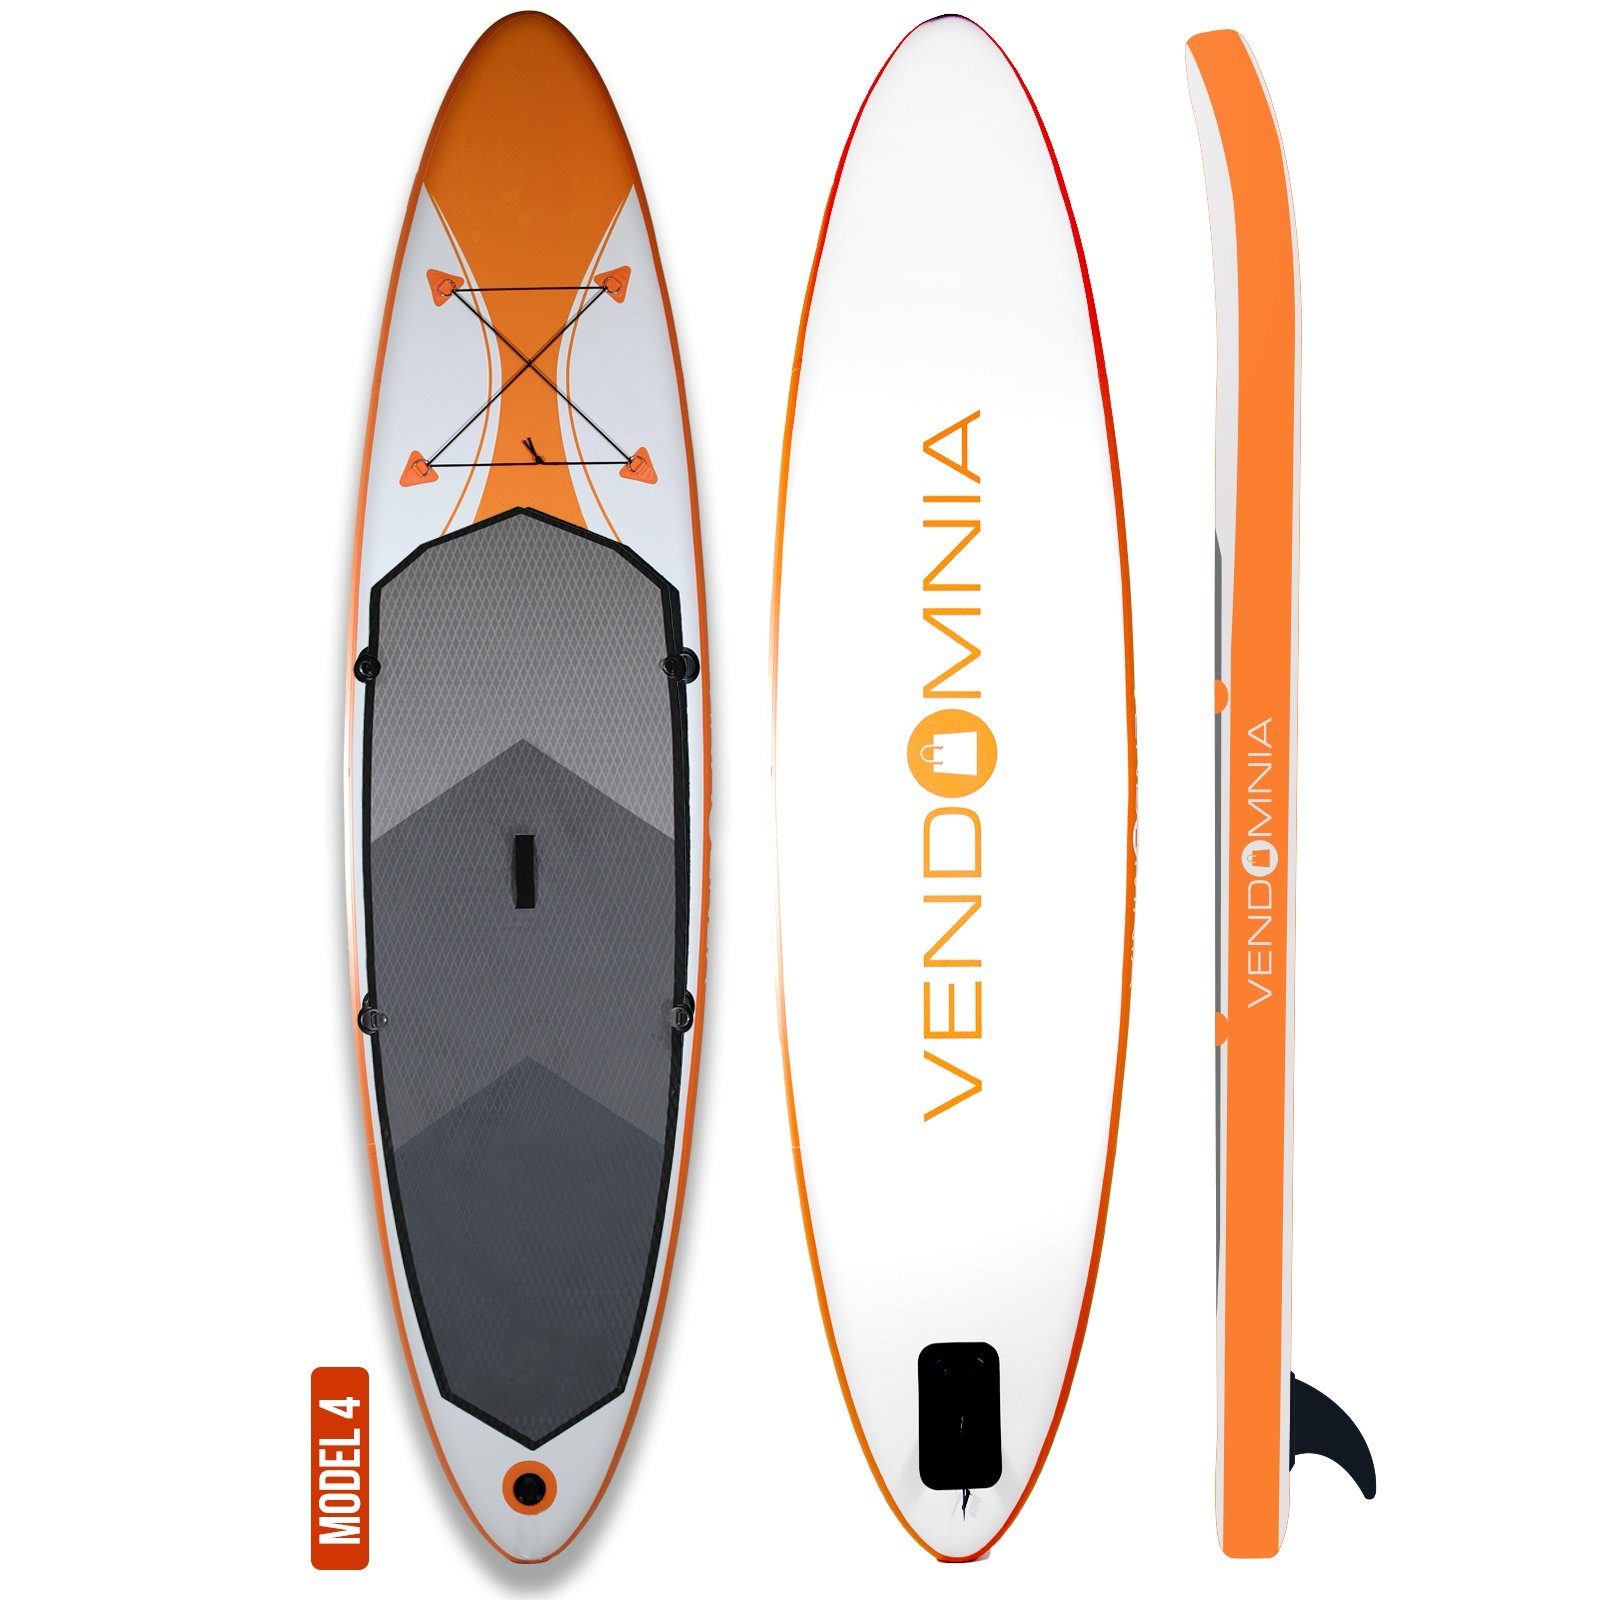 VENDOMNIA Inflatable SUP-Board Paddle kg, Modell PVC 4 Größen Paddling 7 Board, Up Set 305cm Tragetasche, dick, aufblasbar, cm Pumpe, Schichten, 366cm max - Weiß-Orange (15 board, 130 3 Surfboard) 380cm, 320cm Paddelboard, Zubehör, 4: Farben, Stand